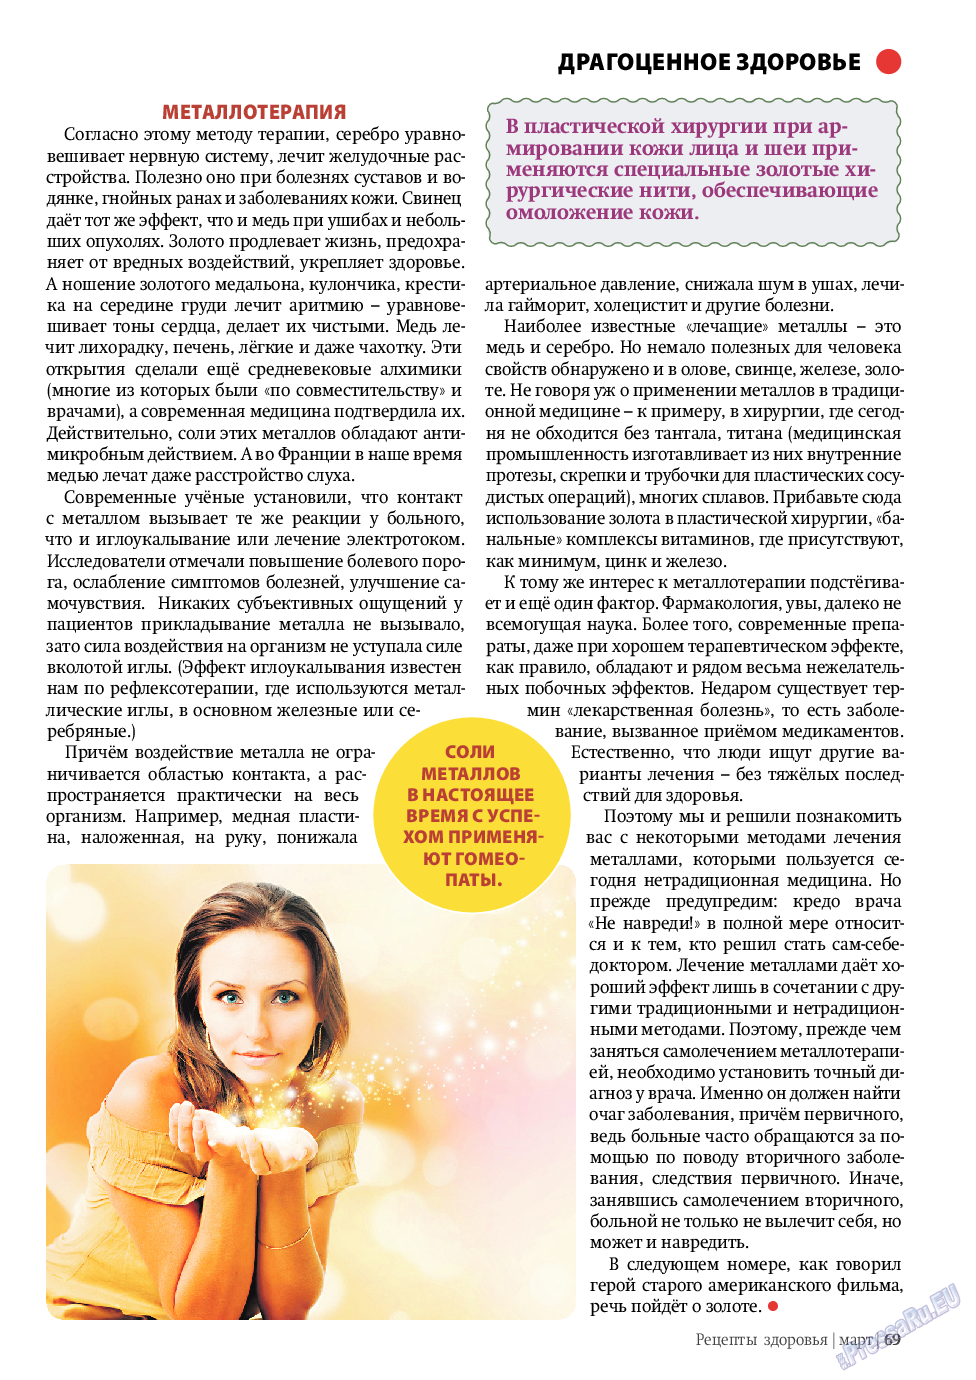 Рецепты здоровья, журнал. 2011 №3 стр.69